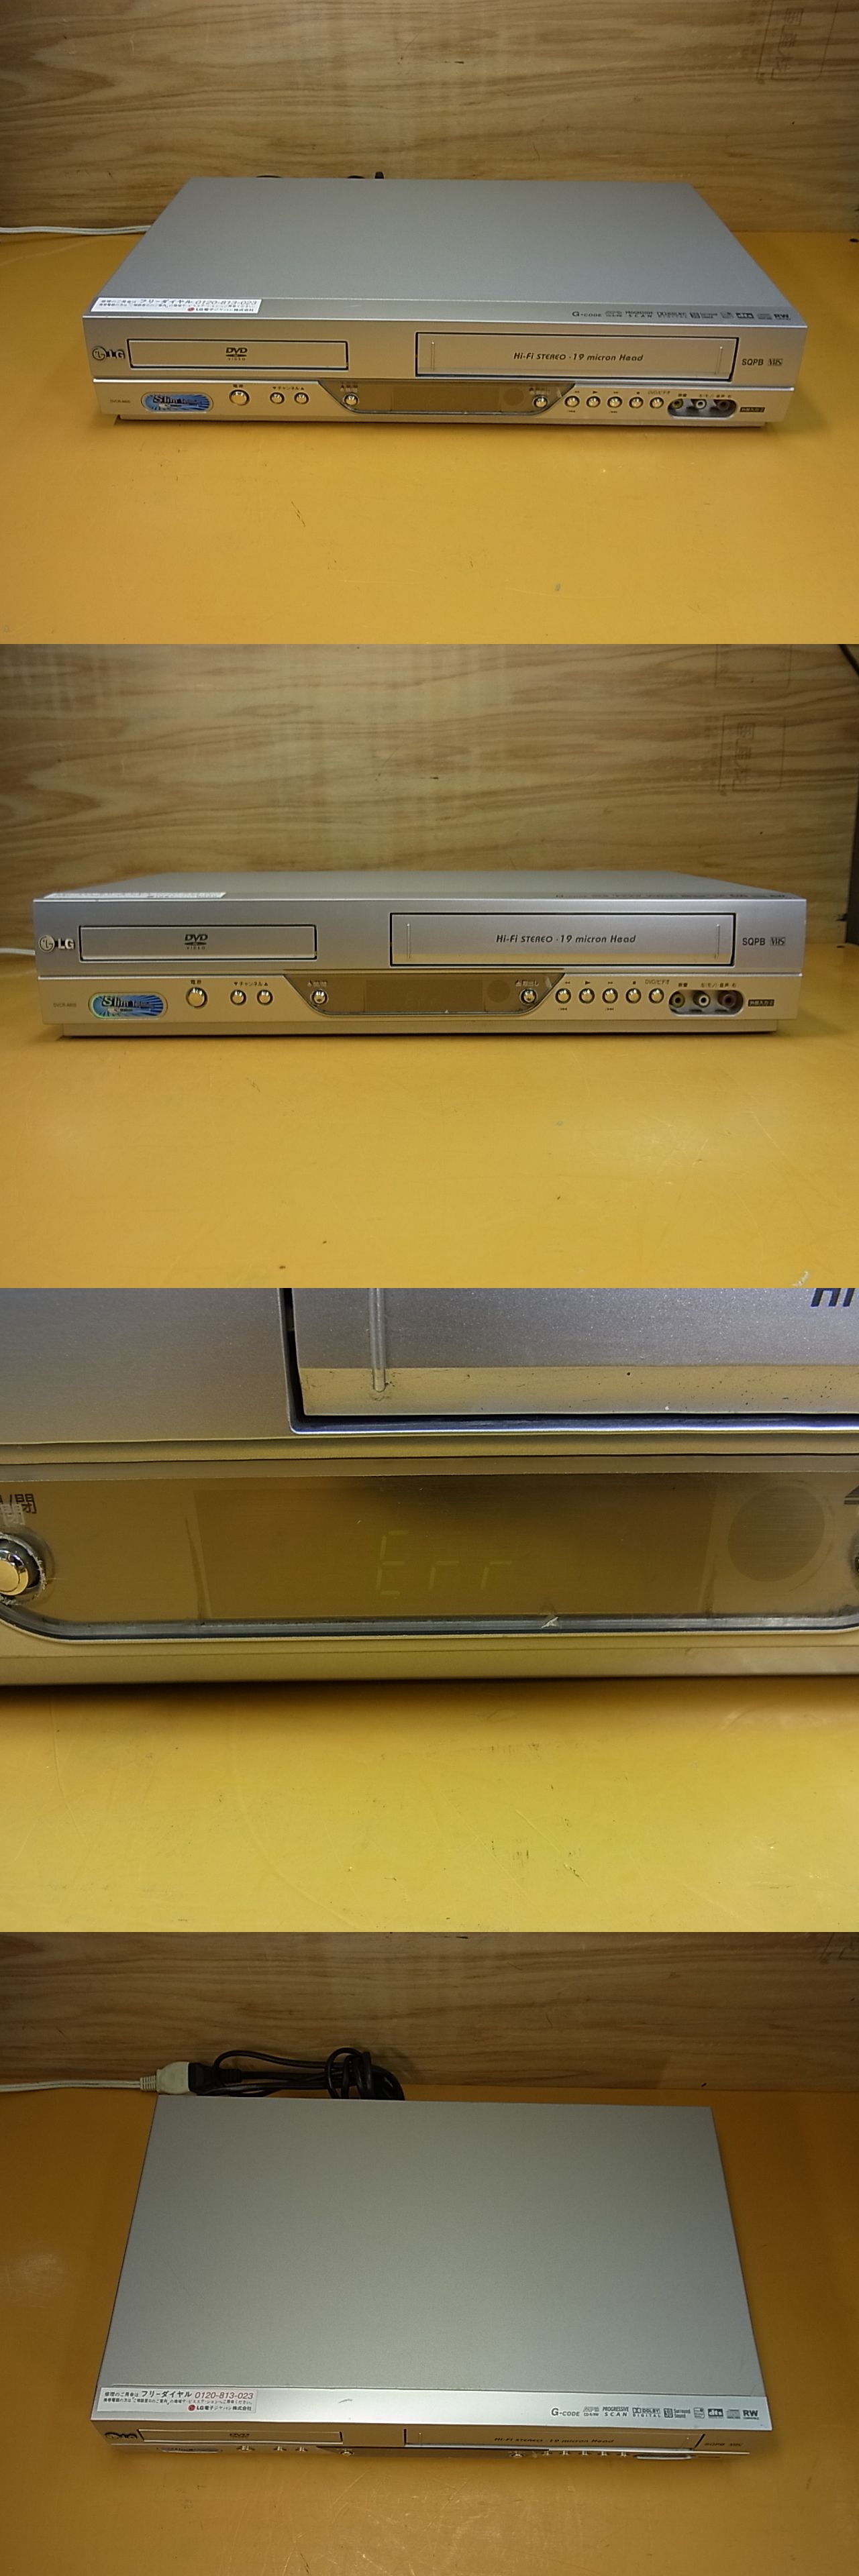 0円 円高還元 LG DVDプレーヤー一体型VHSビデオデッキ DVCR-B300